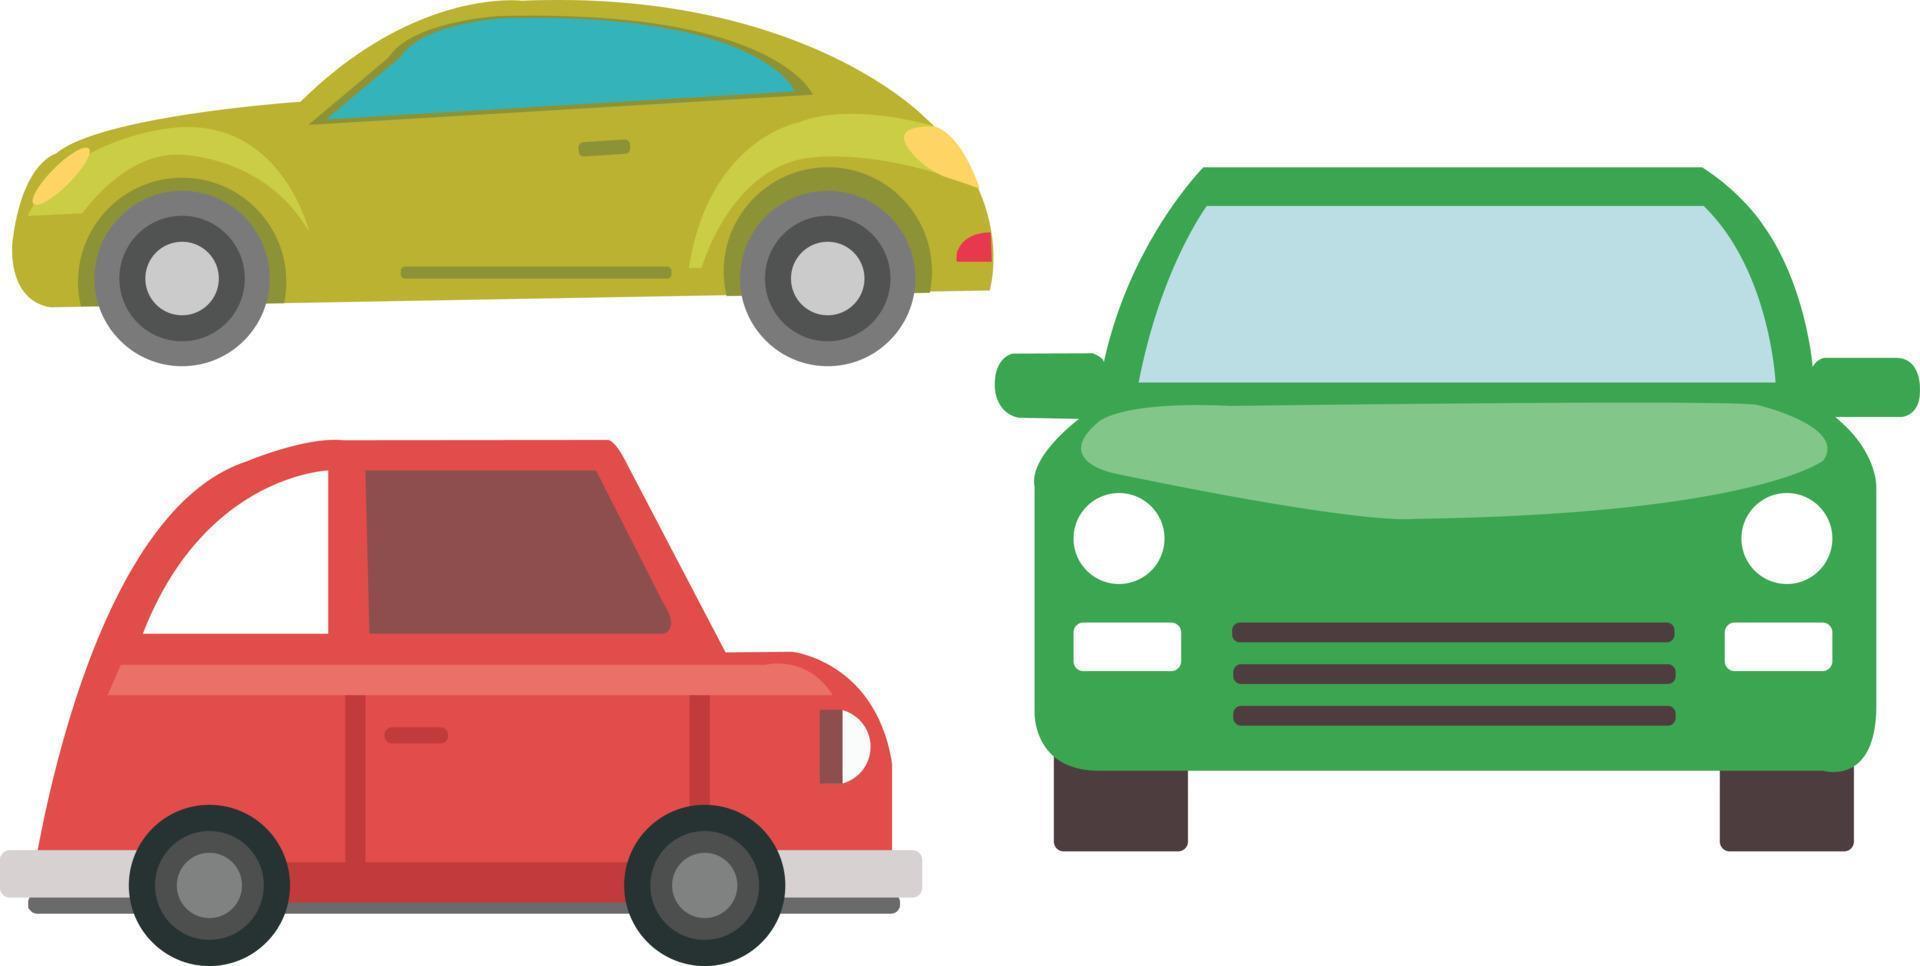 uppsättning av tre bilar olika synvinkel och färg på bilen. vektor